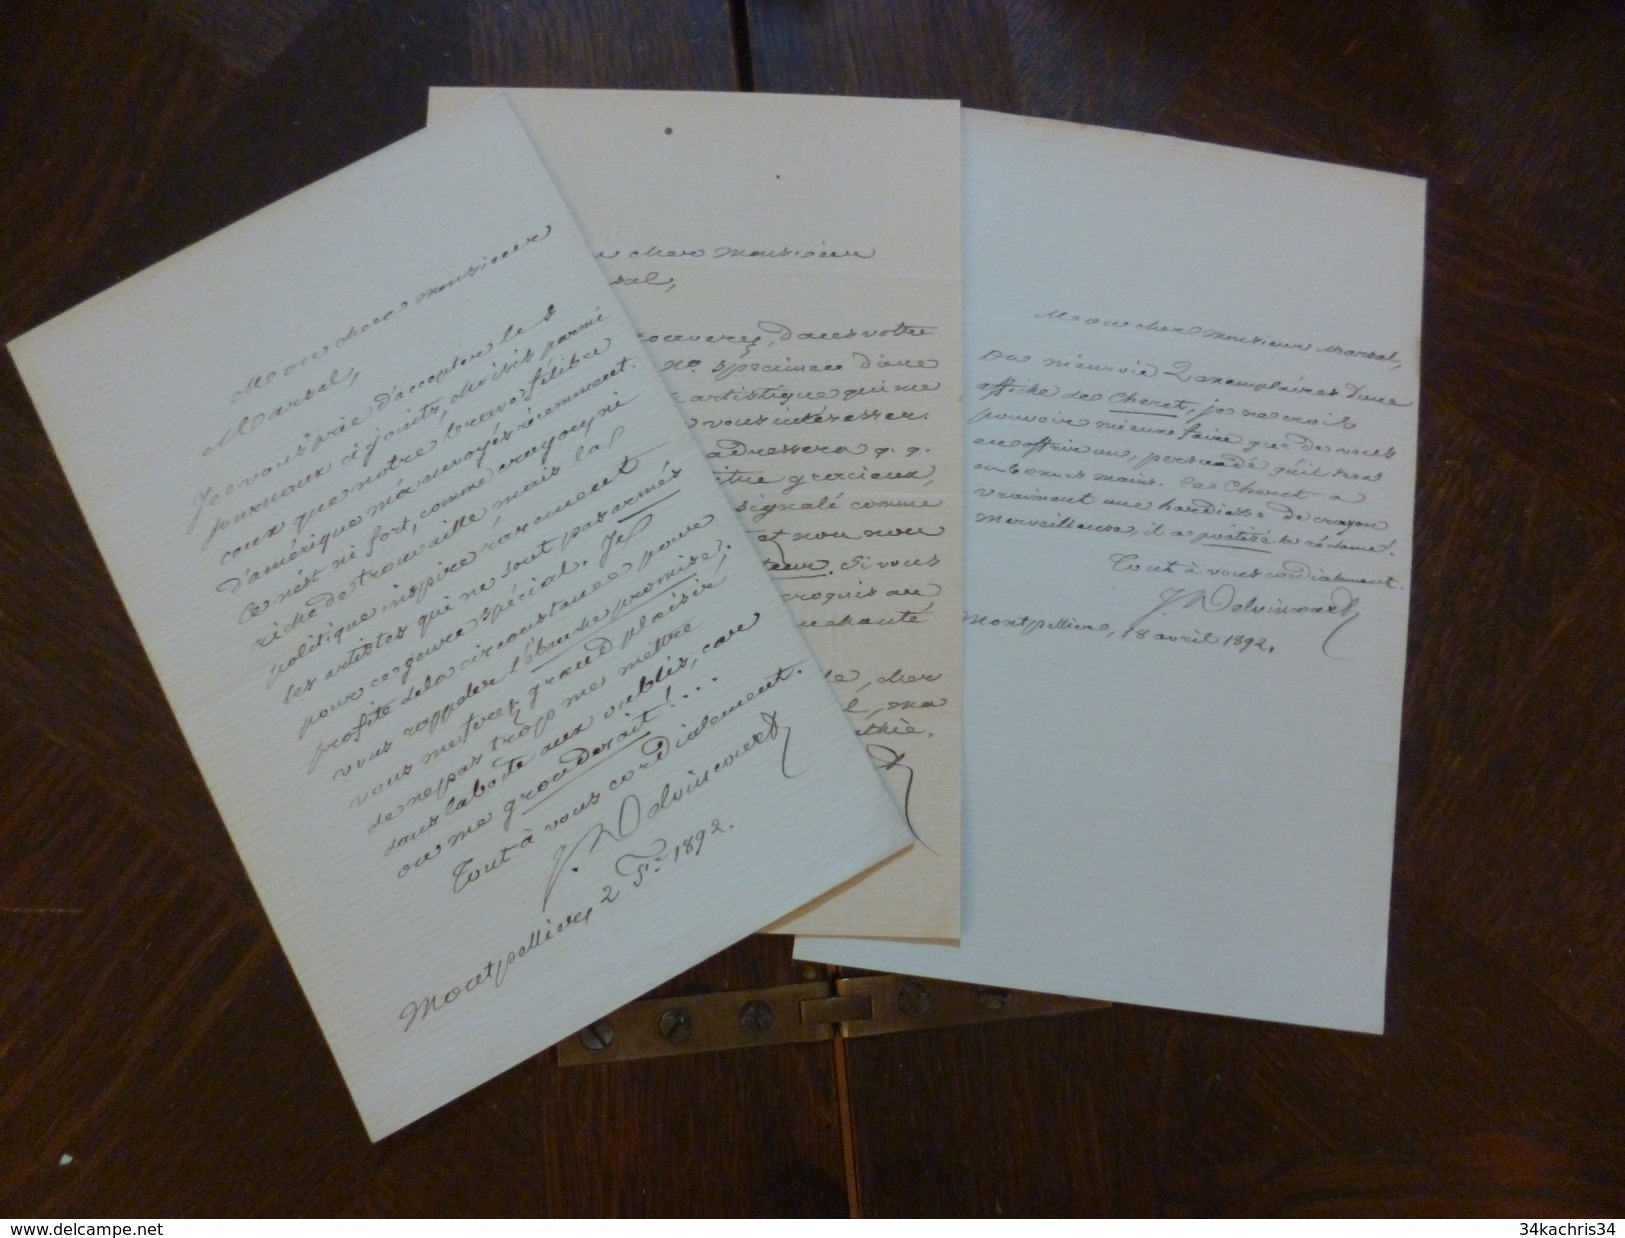 3 Lettres De Delvincourt à Edouard Marsal Peintre Félibrige De Montpellier Dont Propos Sur Cheret1888 Et 1892 ! - Décrets & Lois